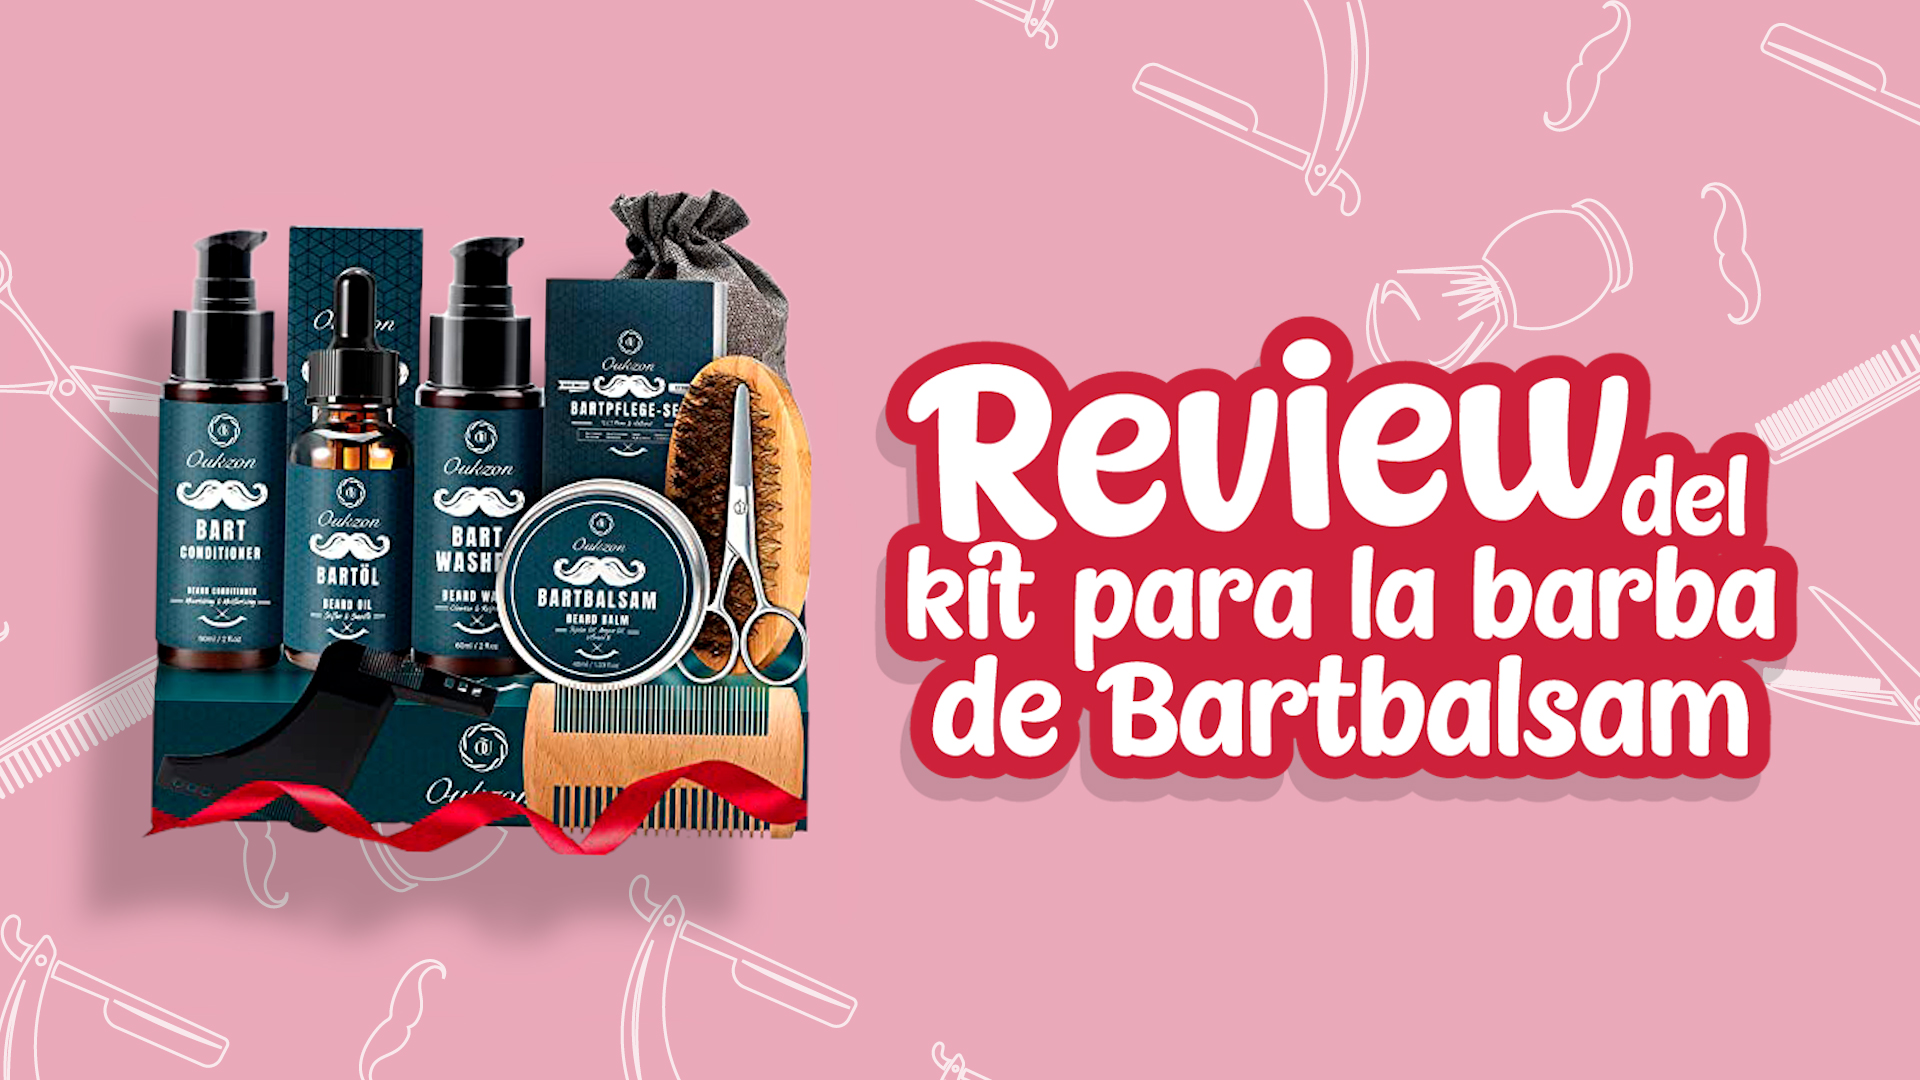 Opiniones del kit para la barba de Bartbalsam - Review del kit para la barba de Bartbalsam